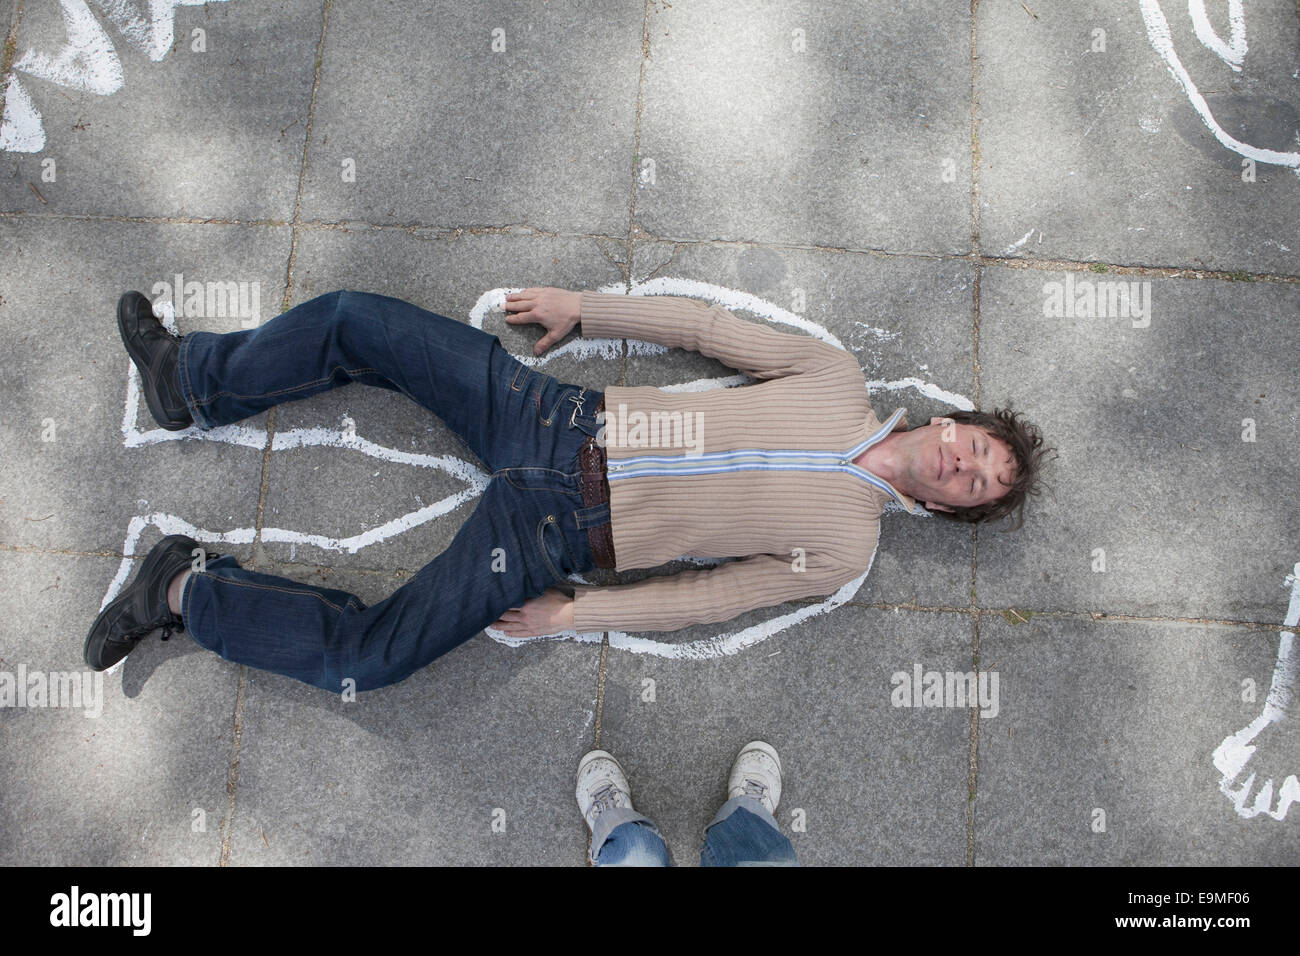 Un alto ángulo de vista de esquema de tiza alrededor del hombre tumbado en la calle Foto de stock